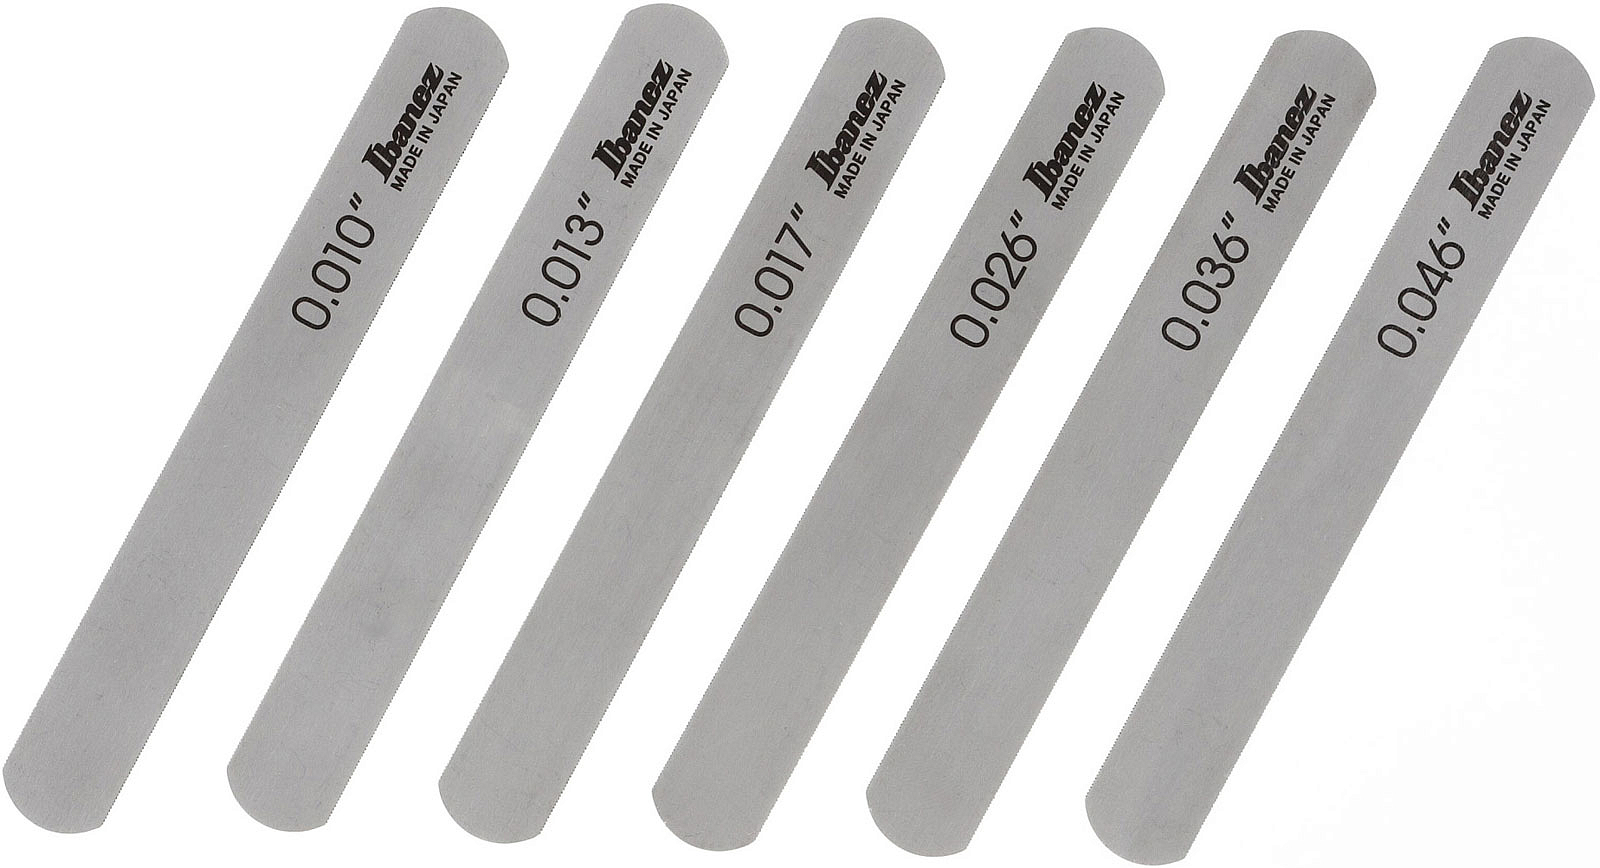 Ibanez 4449EG61X набор напильников для прорезки порожка электрогитары | Продукция IBANEZ